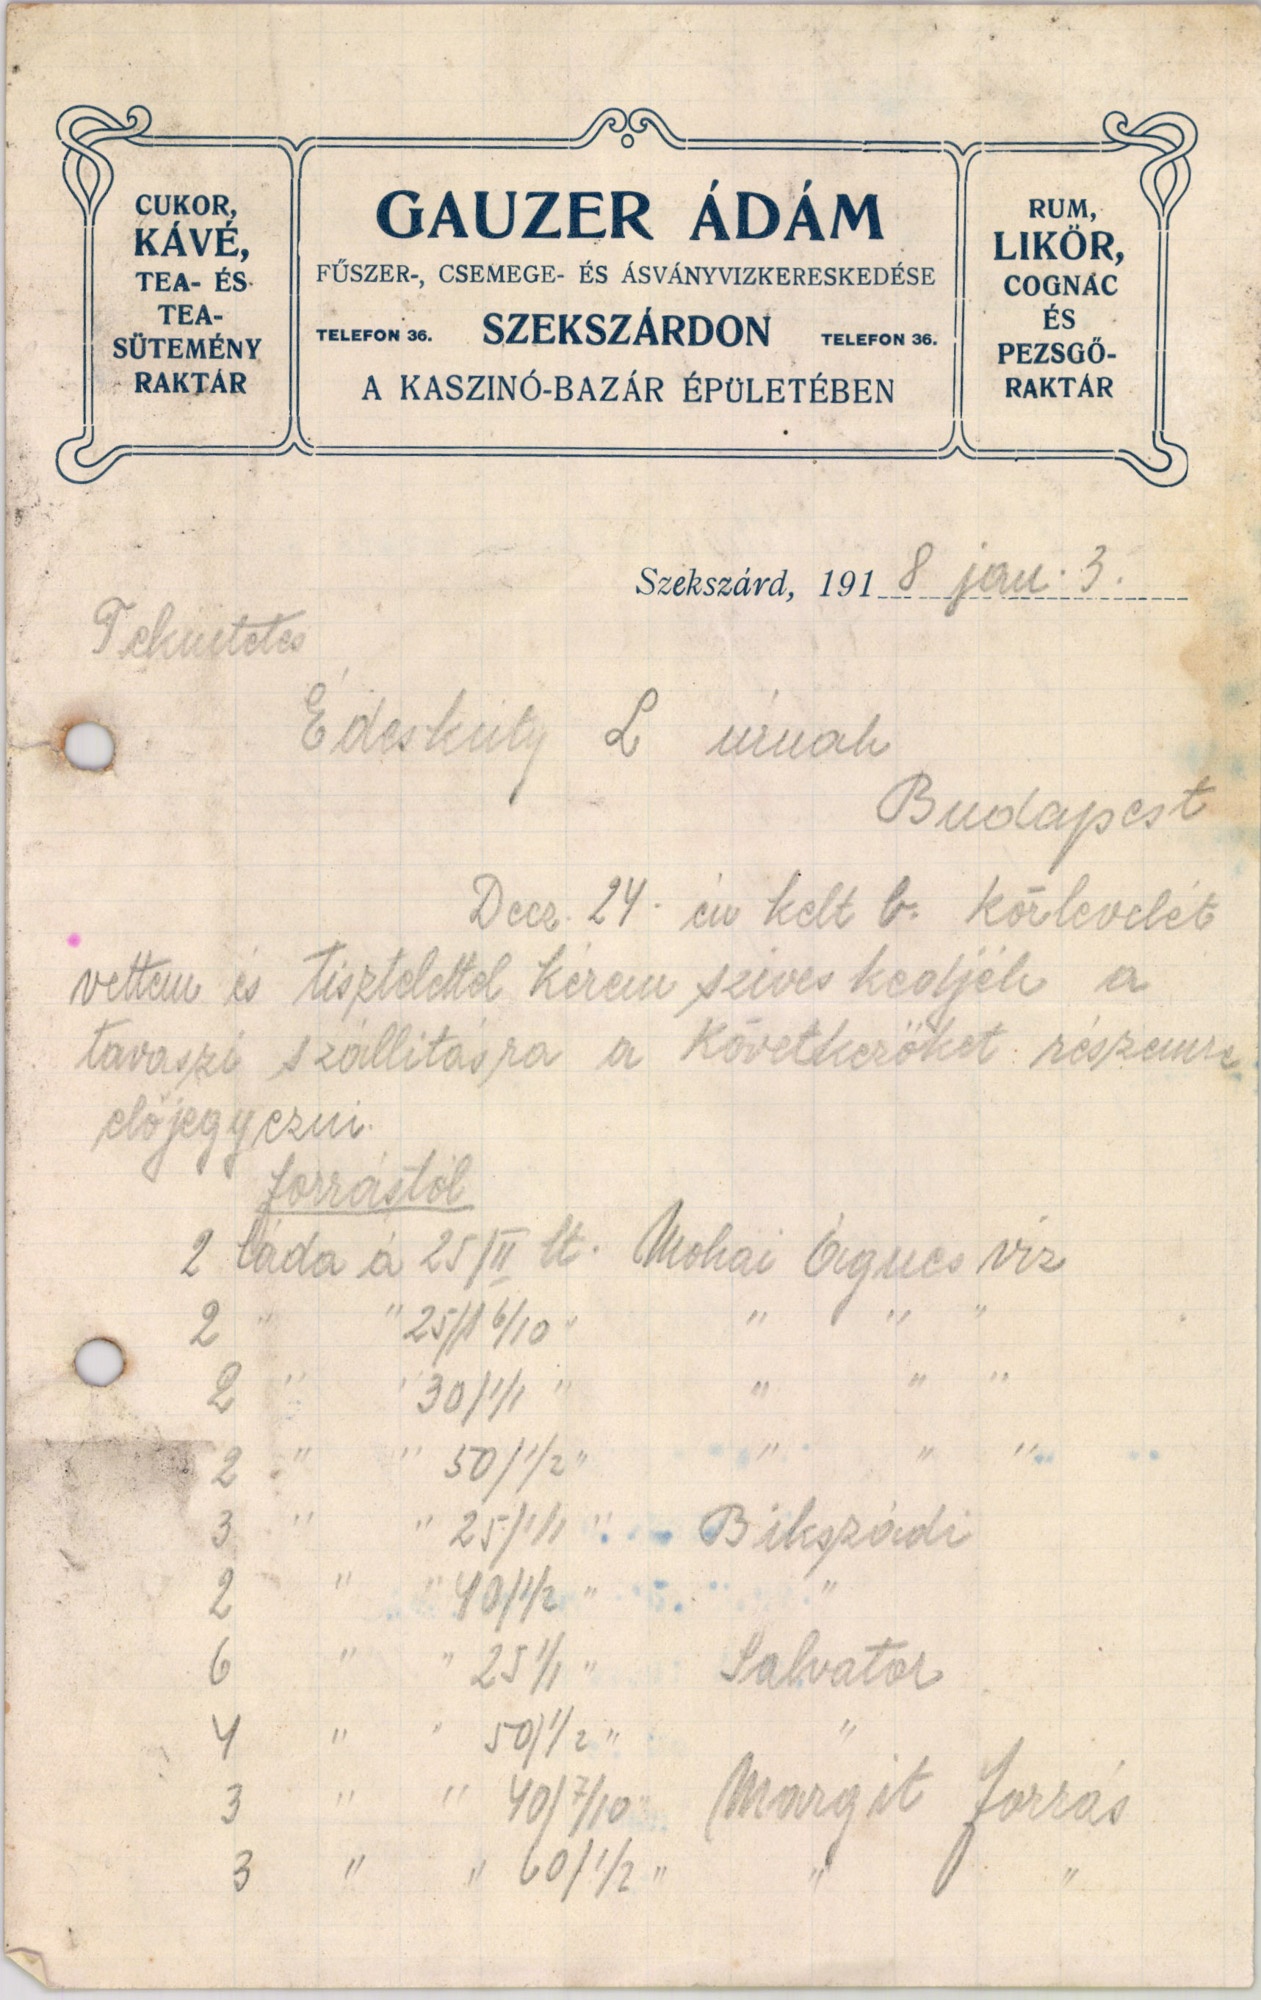 Gauzer Ádám fűszer-, csemege- és ásványvizkereskedése (Magyar Kereskedelmi és Vendéglátóipari Múzeum CC BY-NC-SA)